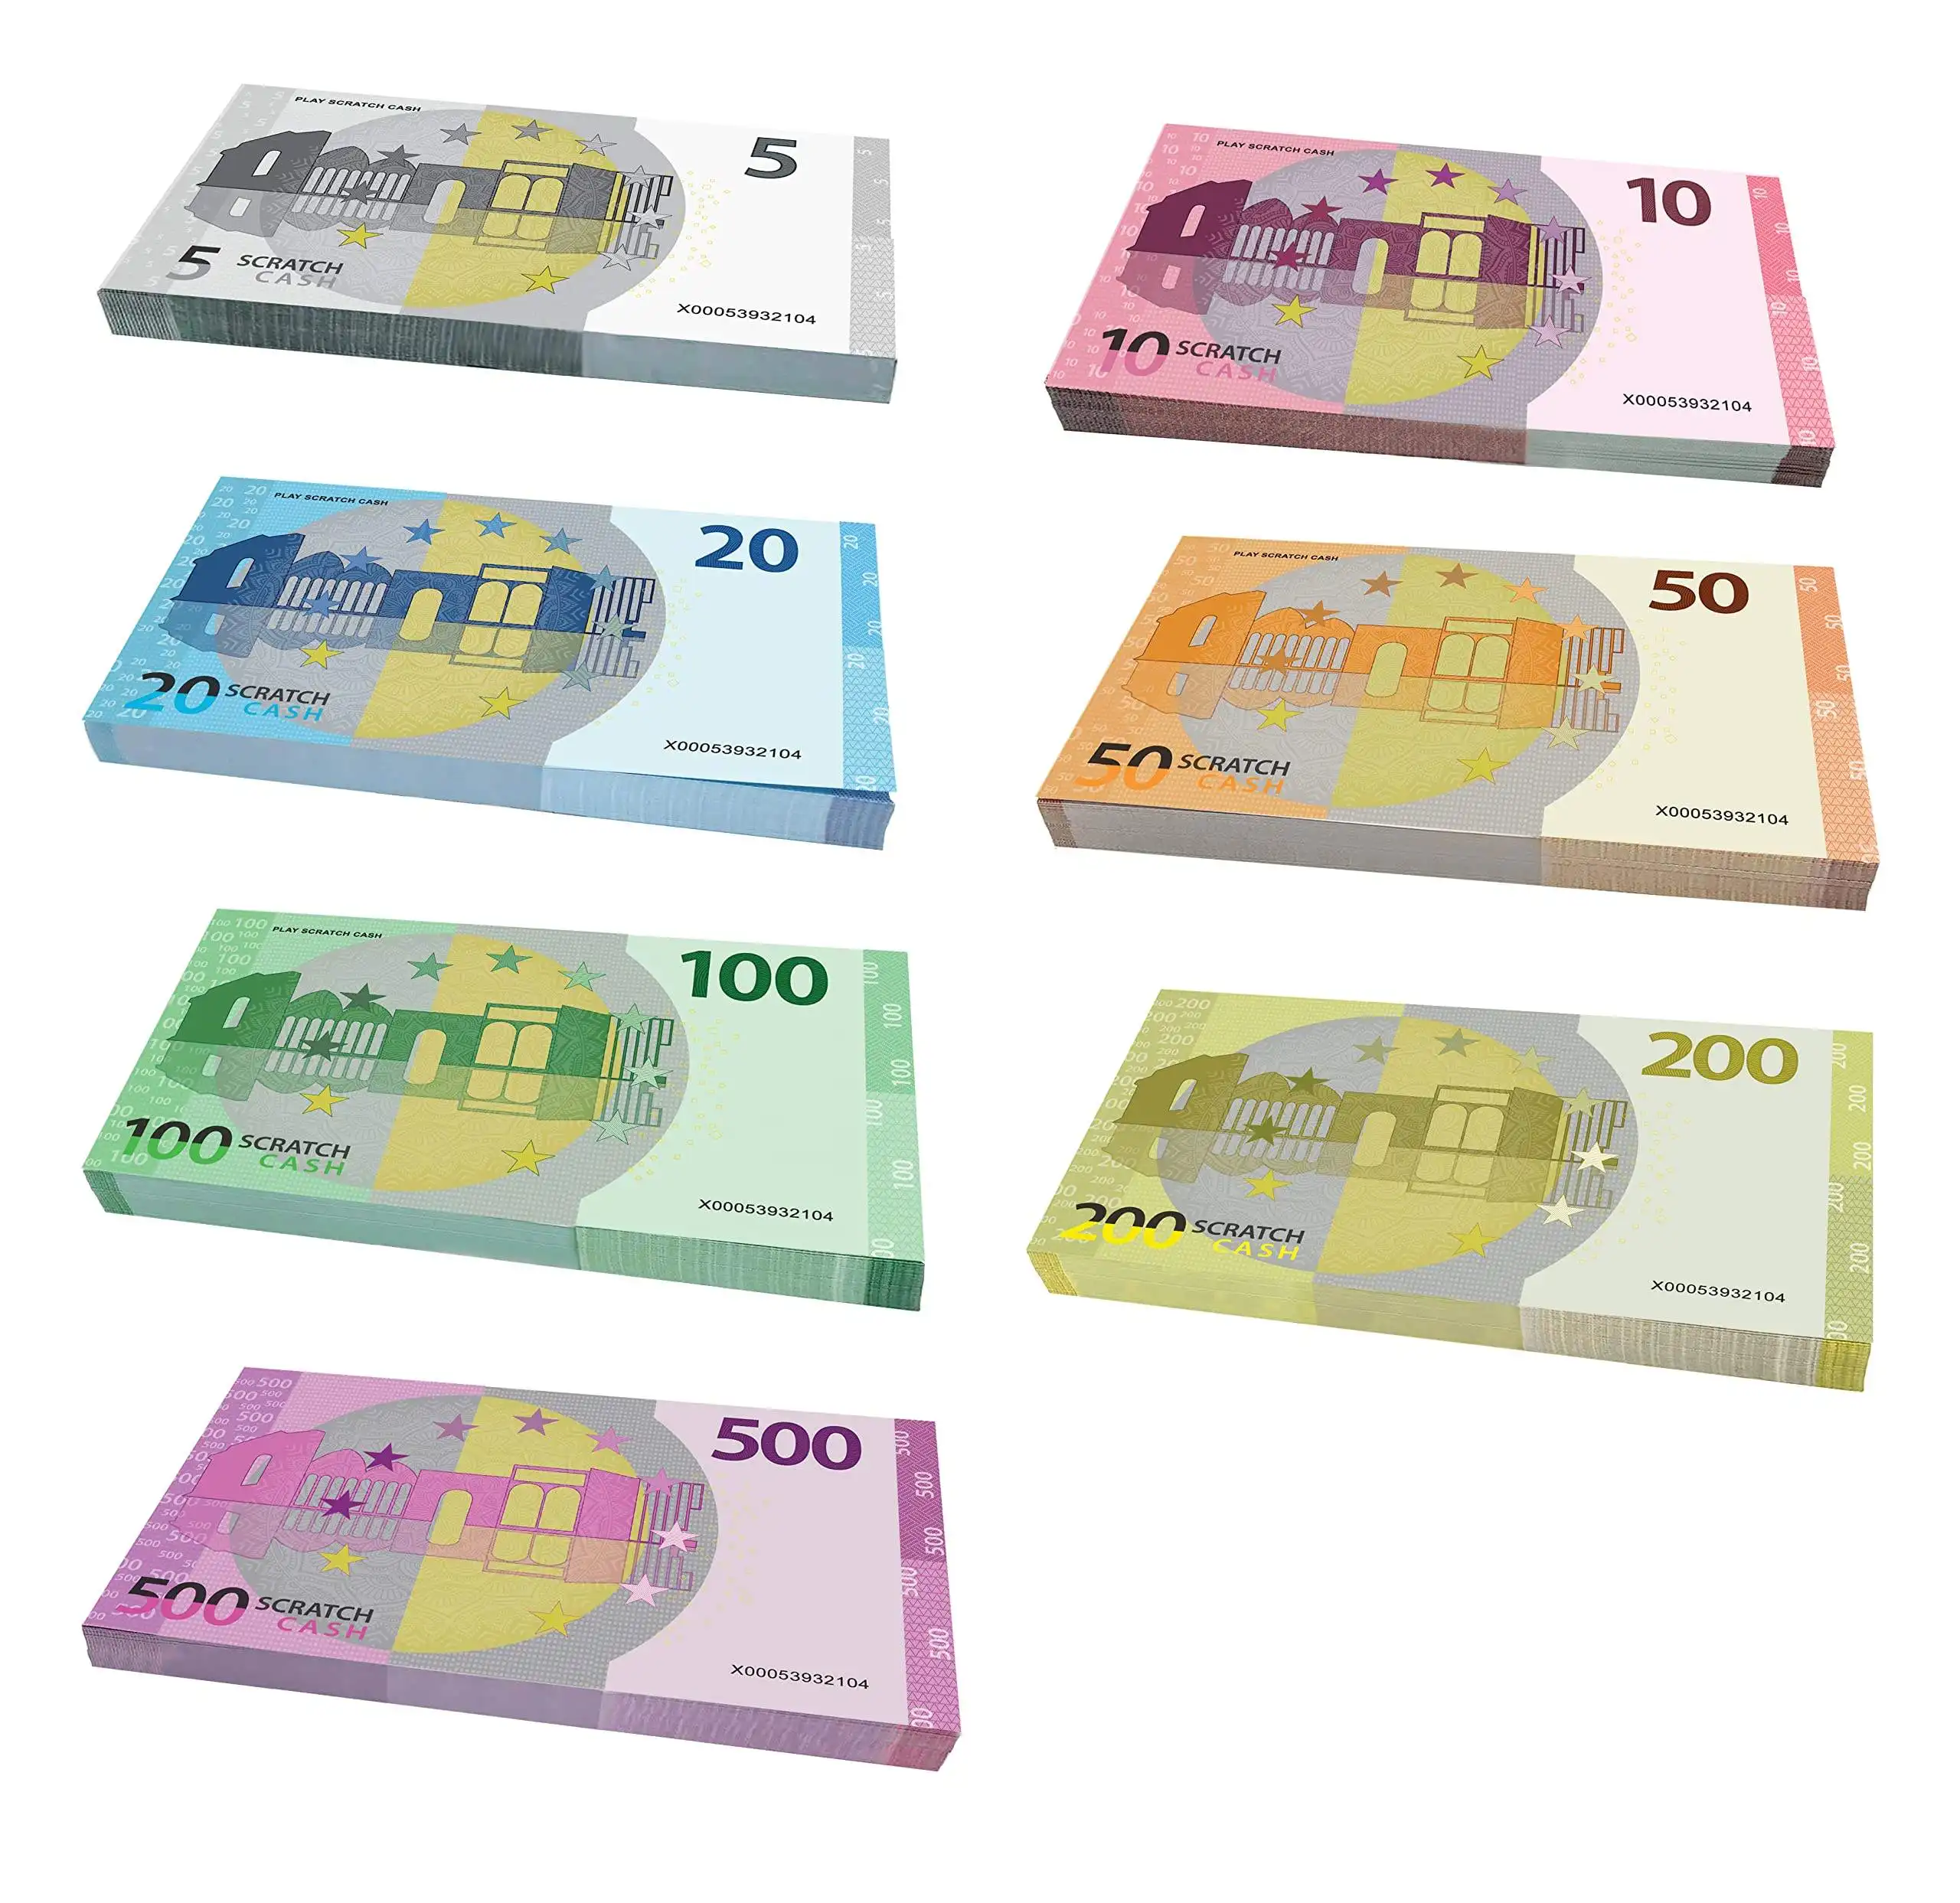 Banknoten Paper Prop Money One Stack 100 Stück Euro Bills Realistisches Spielgeld für Movie Requisiten